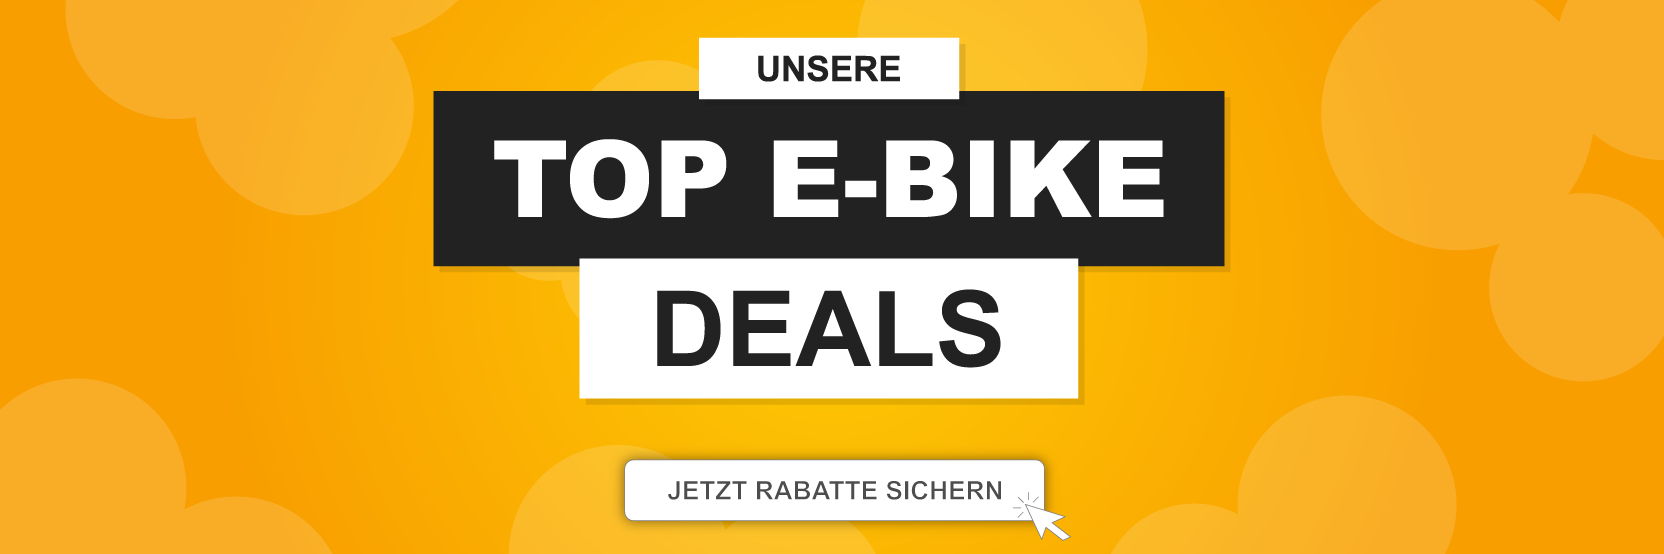 Top E-Bike Deals